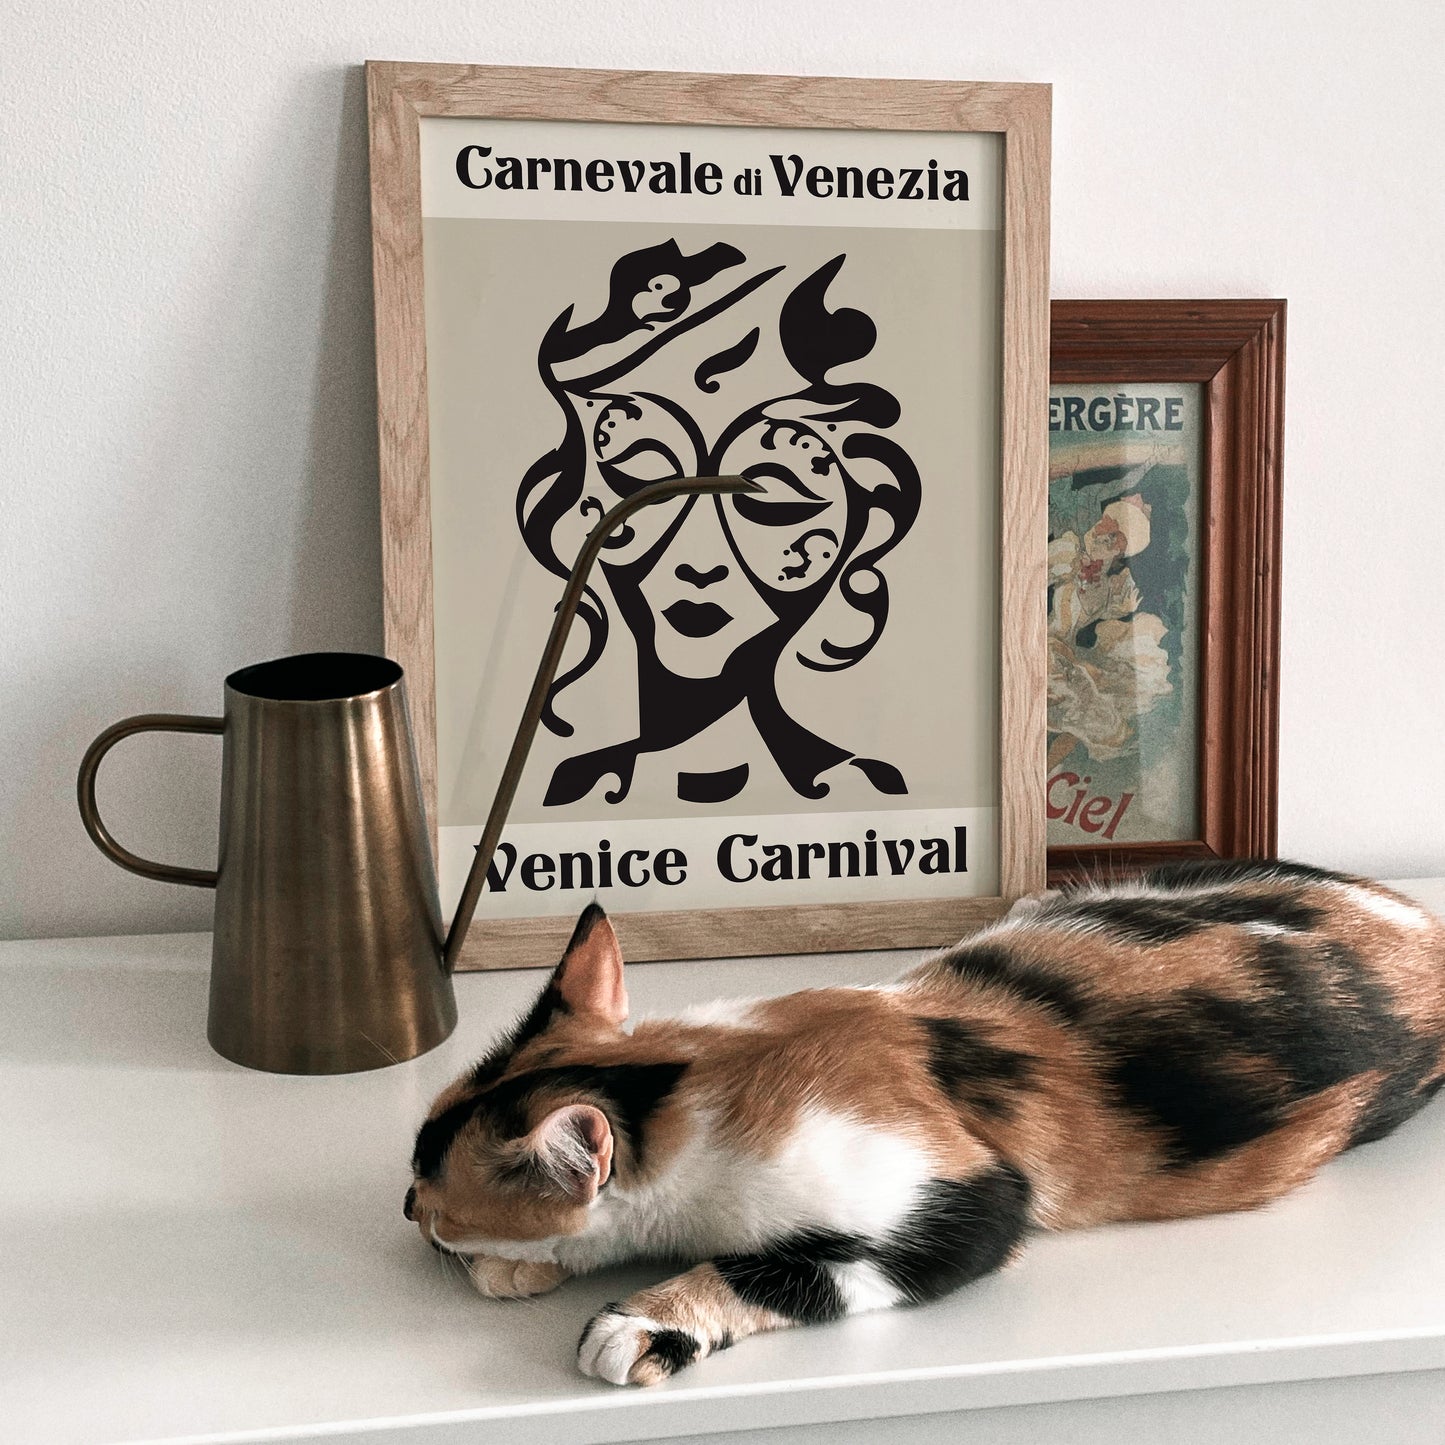 Carnival of Venice Poster